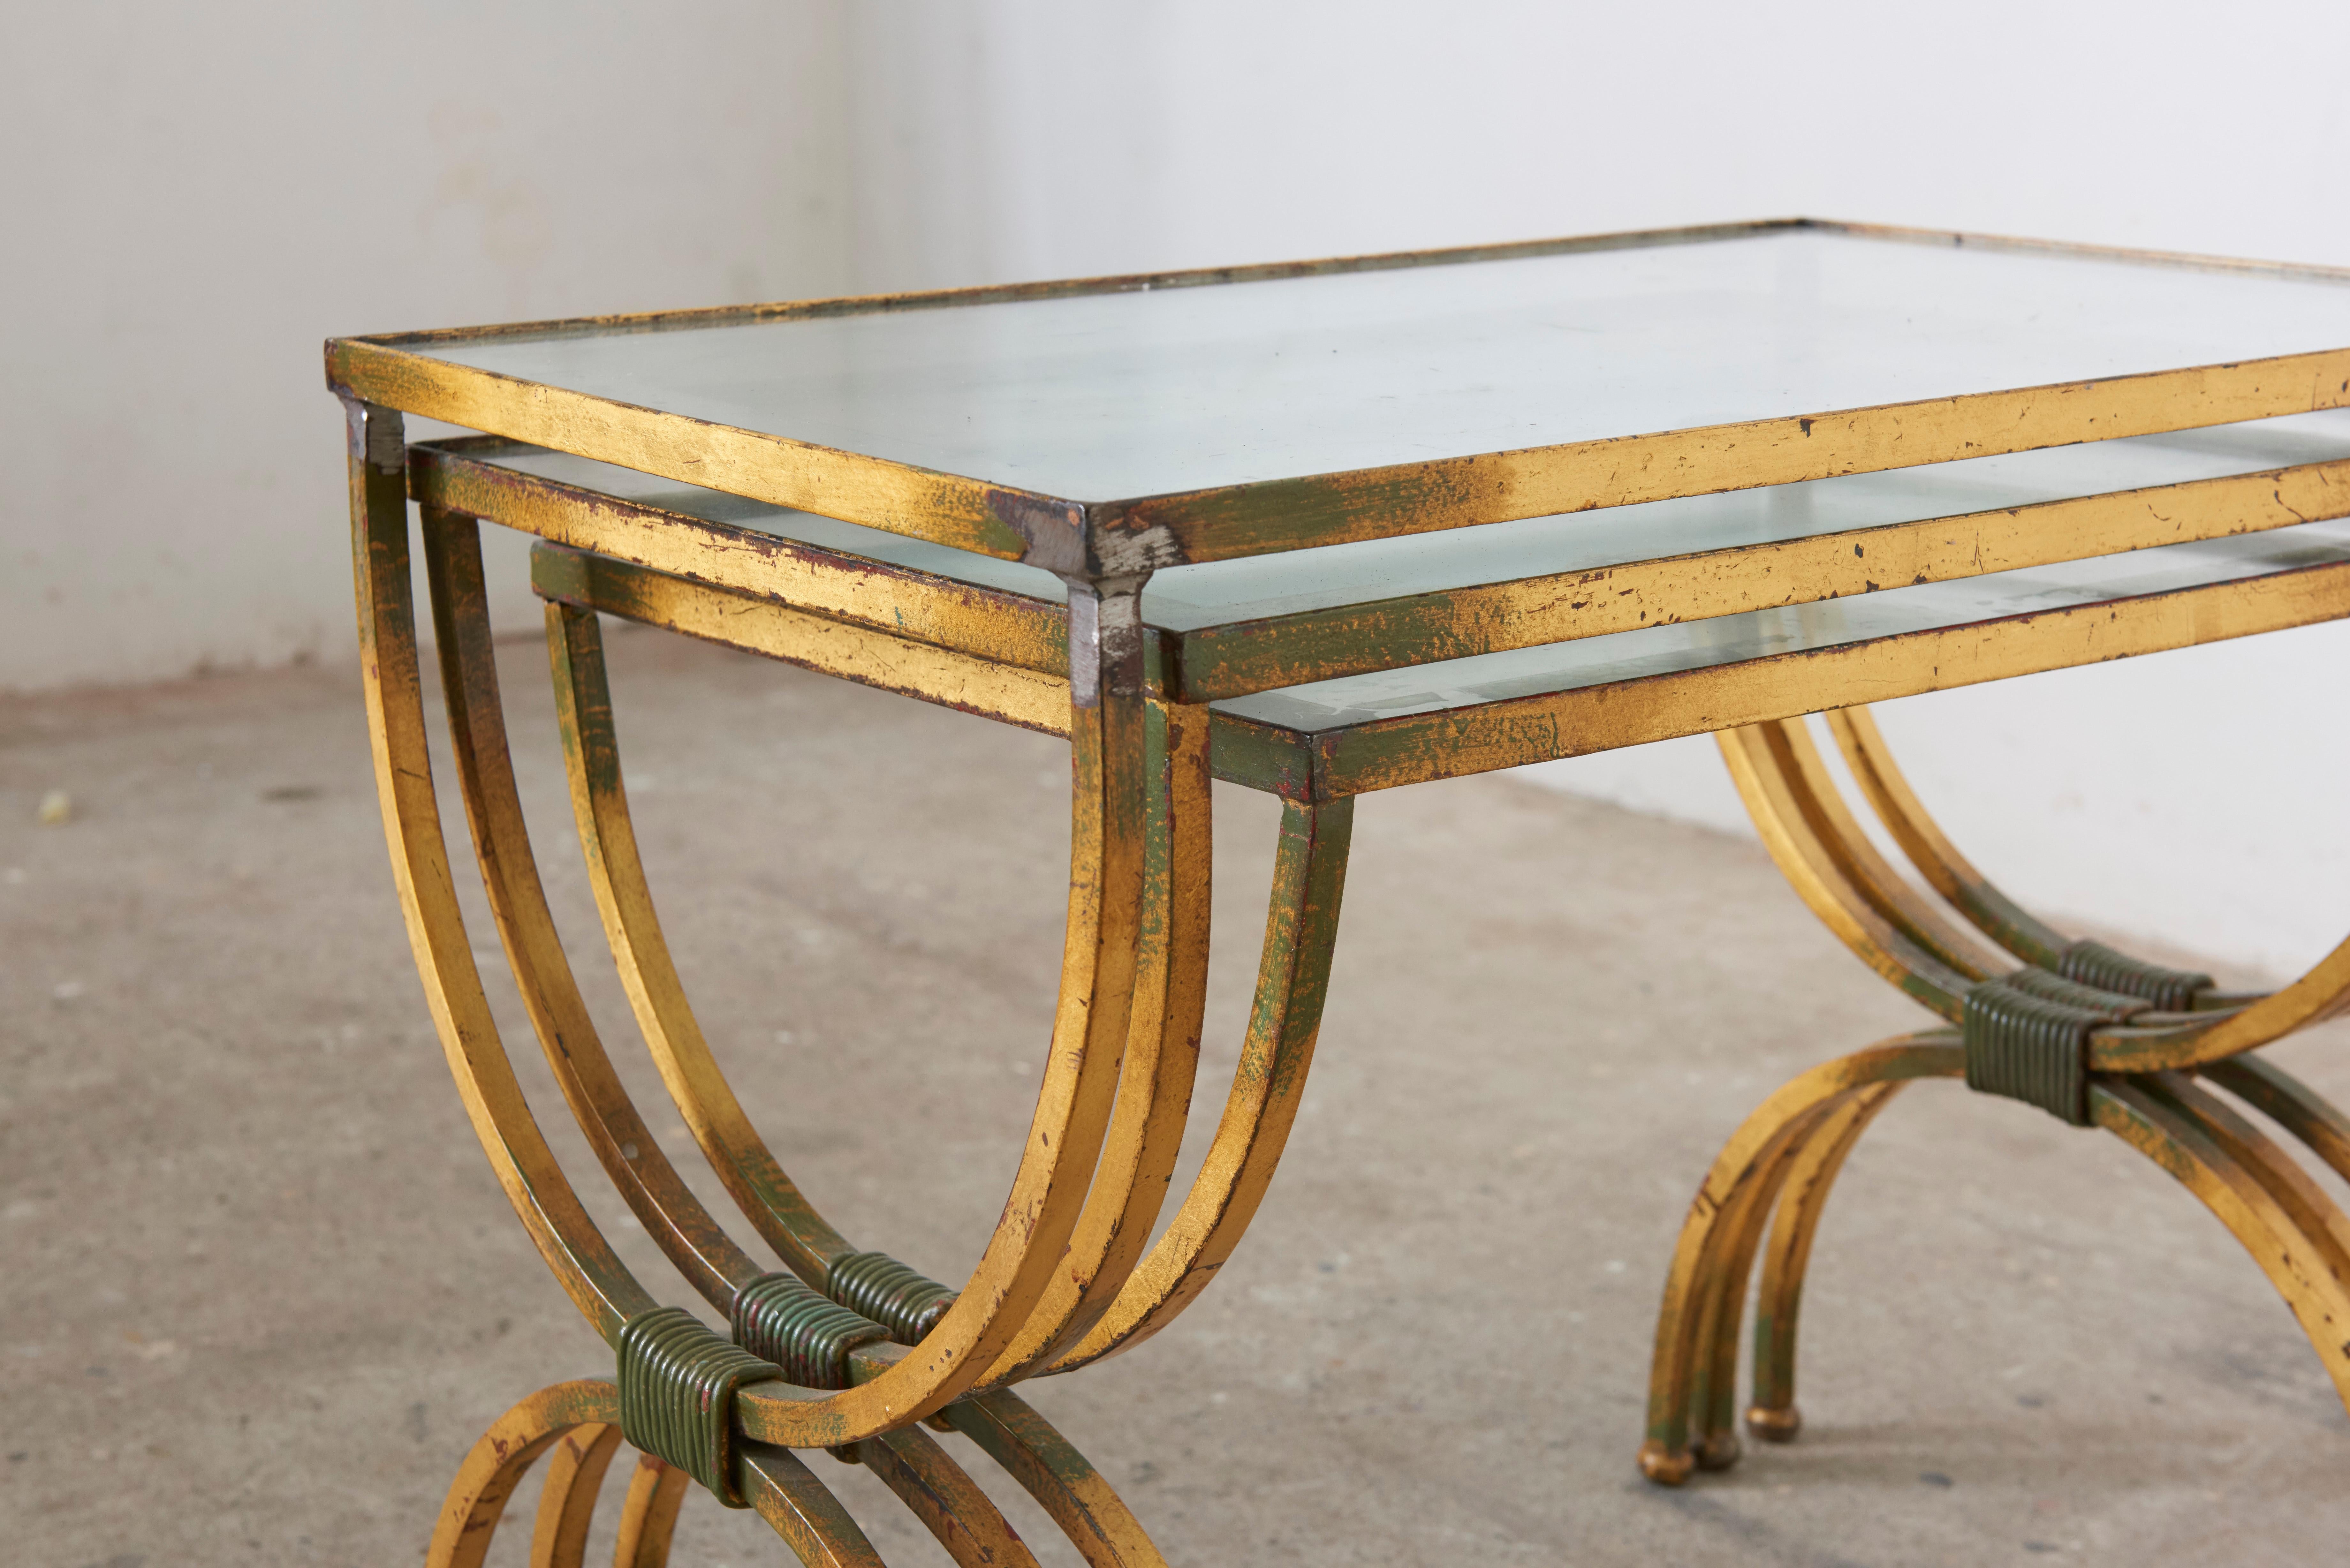 Tischset im Stil von Jean Royere aus den 1950er Jahren. Die Metallstruktur ist handvergoldet und hat eine wunderschöne Patina. 
Die Tischplatten sind aus Glas mit silberner Oberfläche. Alle in gutem Zustand ohne Chips oder Risse das Silber mit